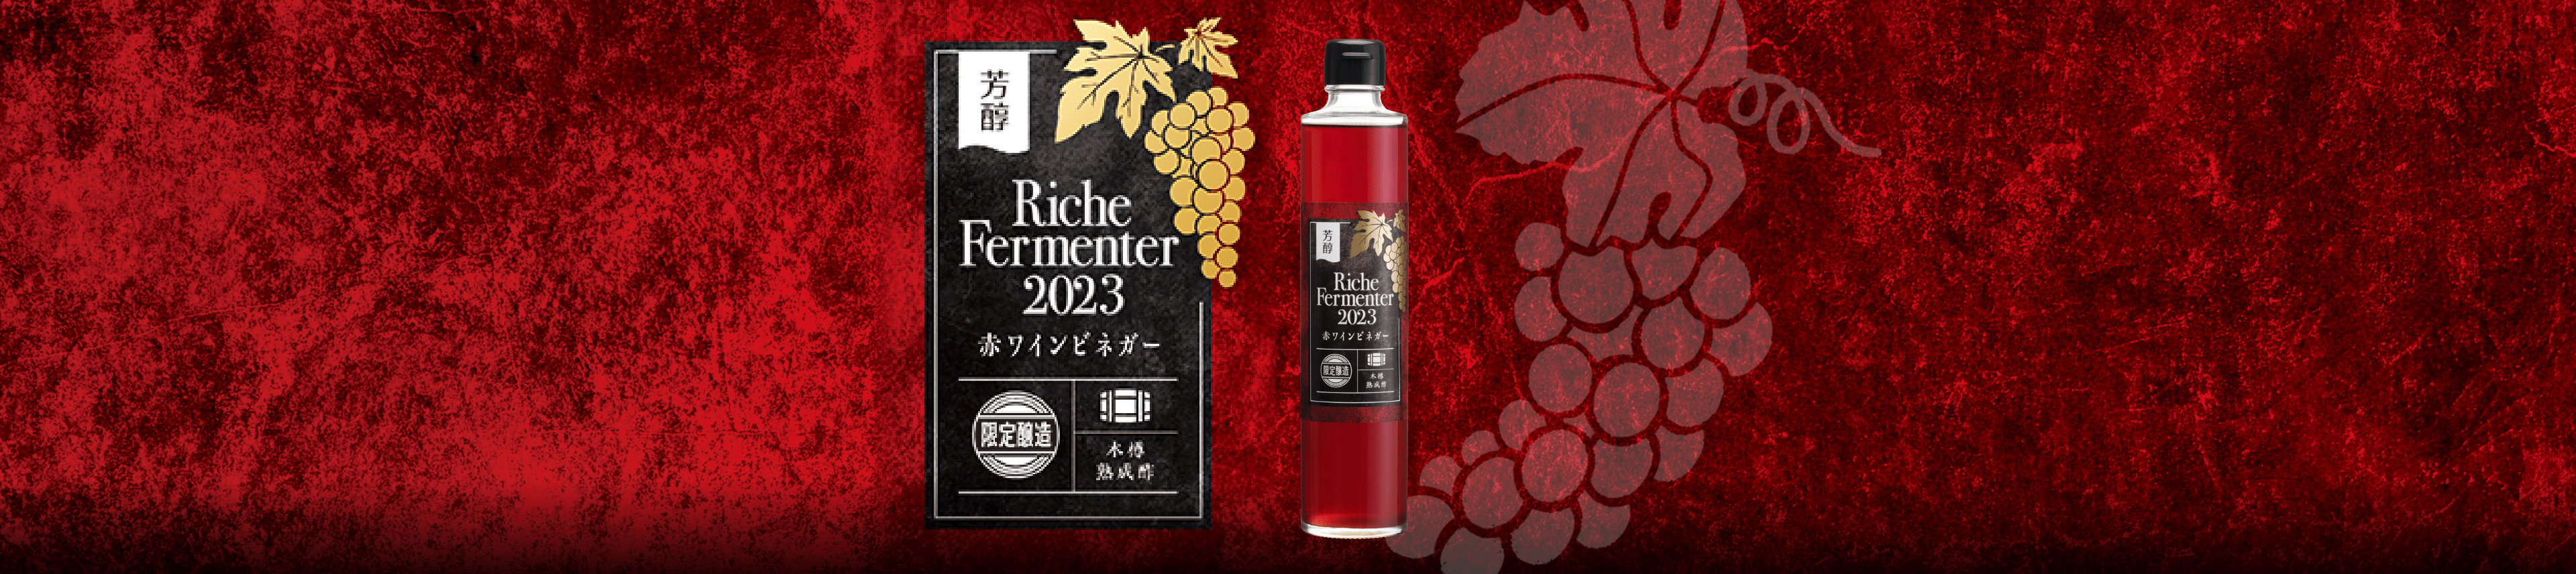 芳醇 Riche Fermenter 赤ワインビネガー2023